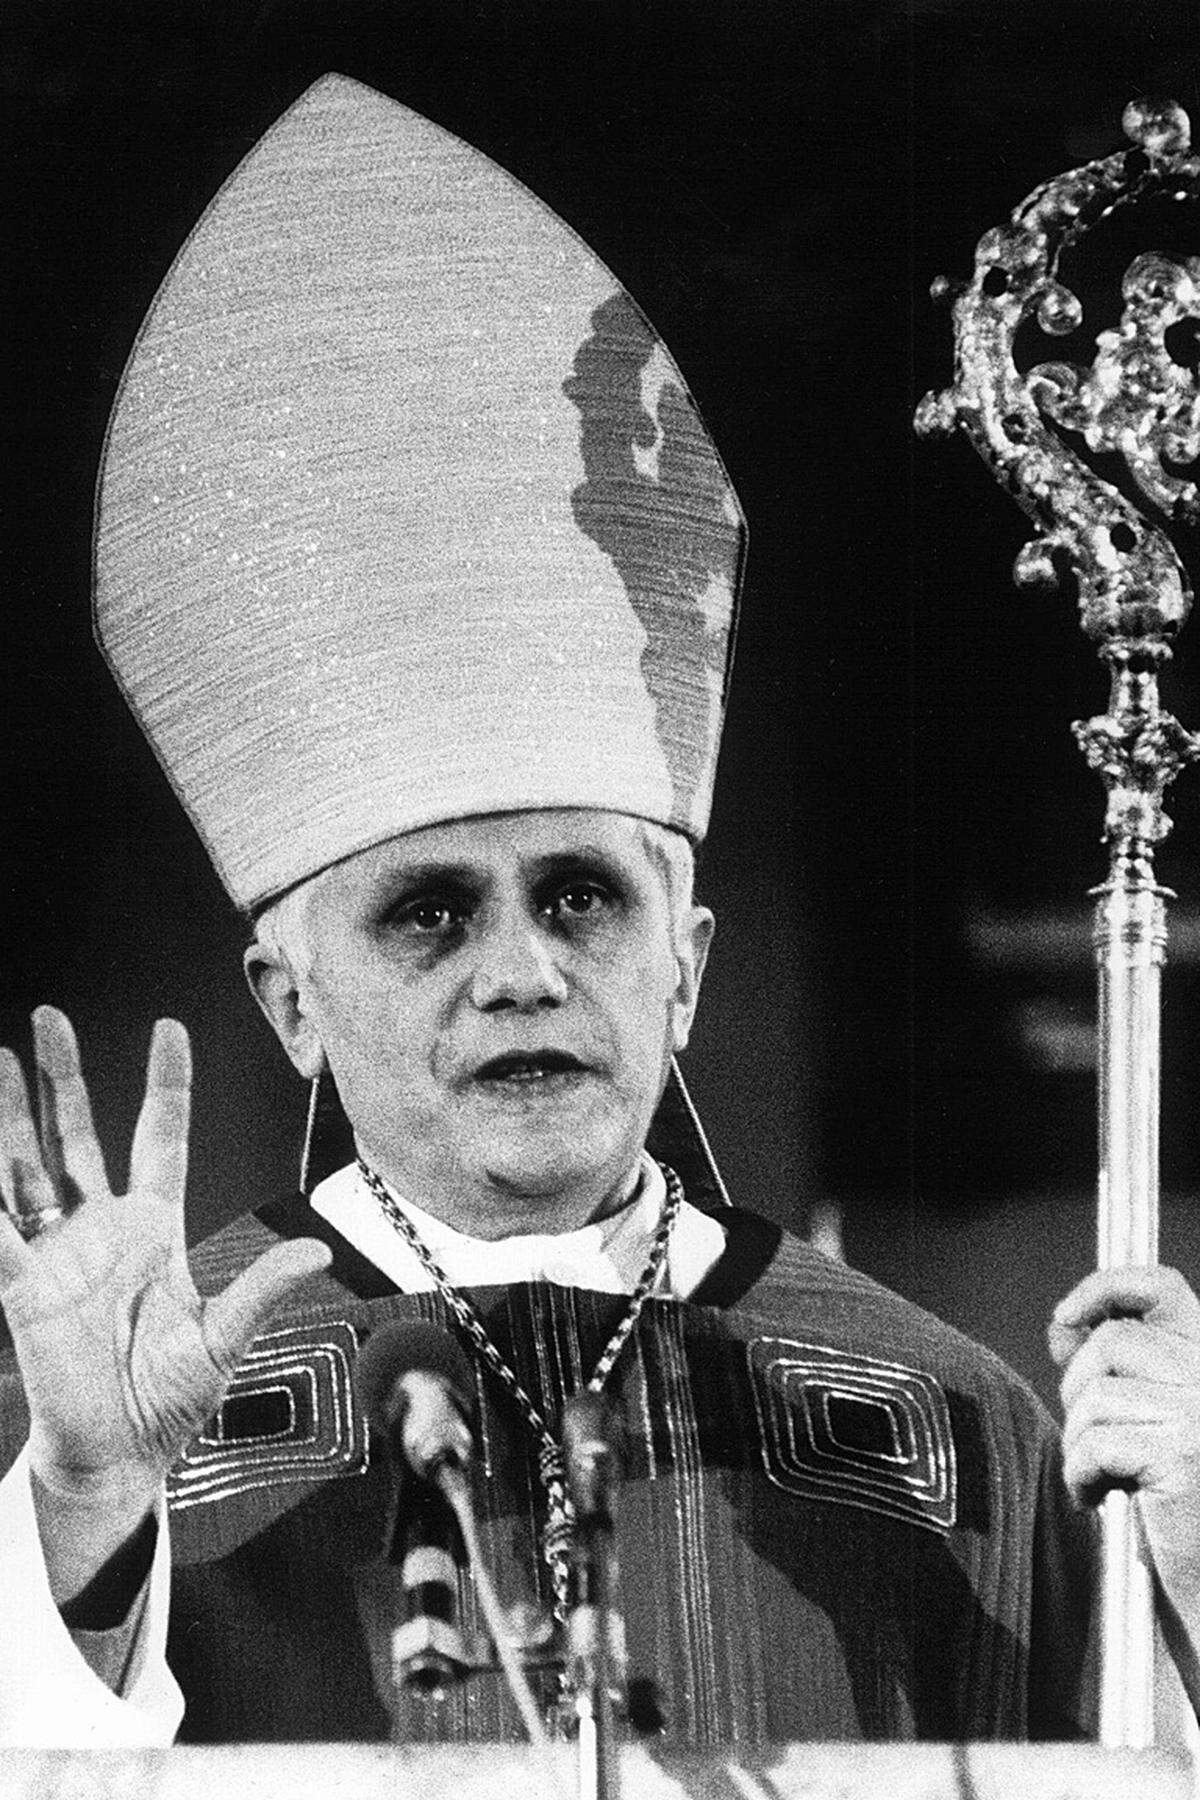 Papst Johannes Paul II. holte Ratzinger nach nur vier Jahren in der bayrischen Metropole zu sich nach Rom. "München ist wichtig", sagte der Papst - aber "die Weltkirche ist wichtiger".